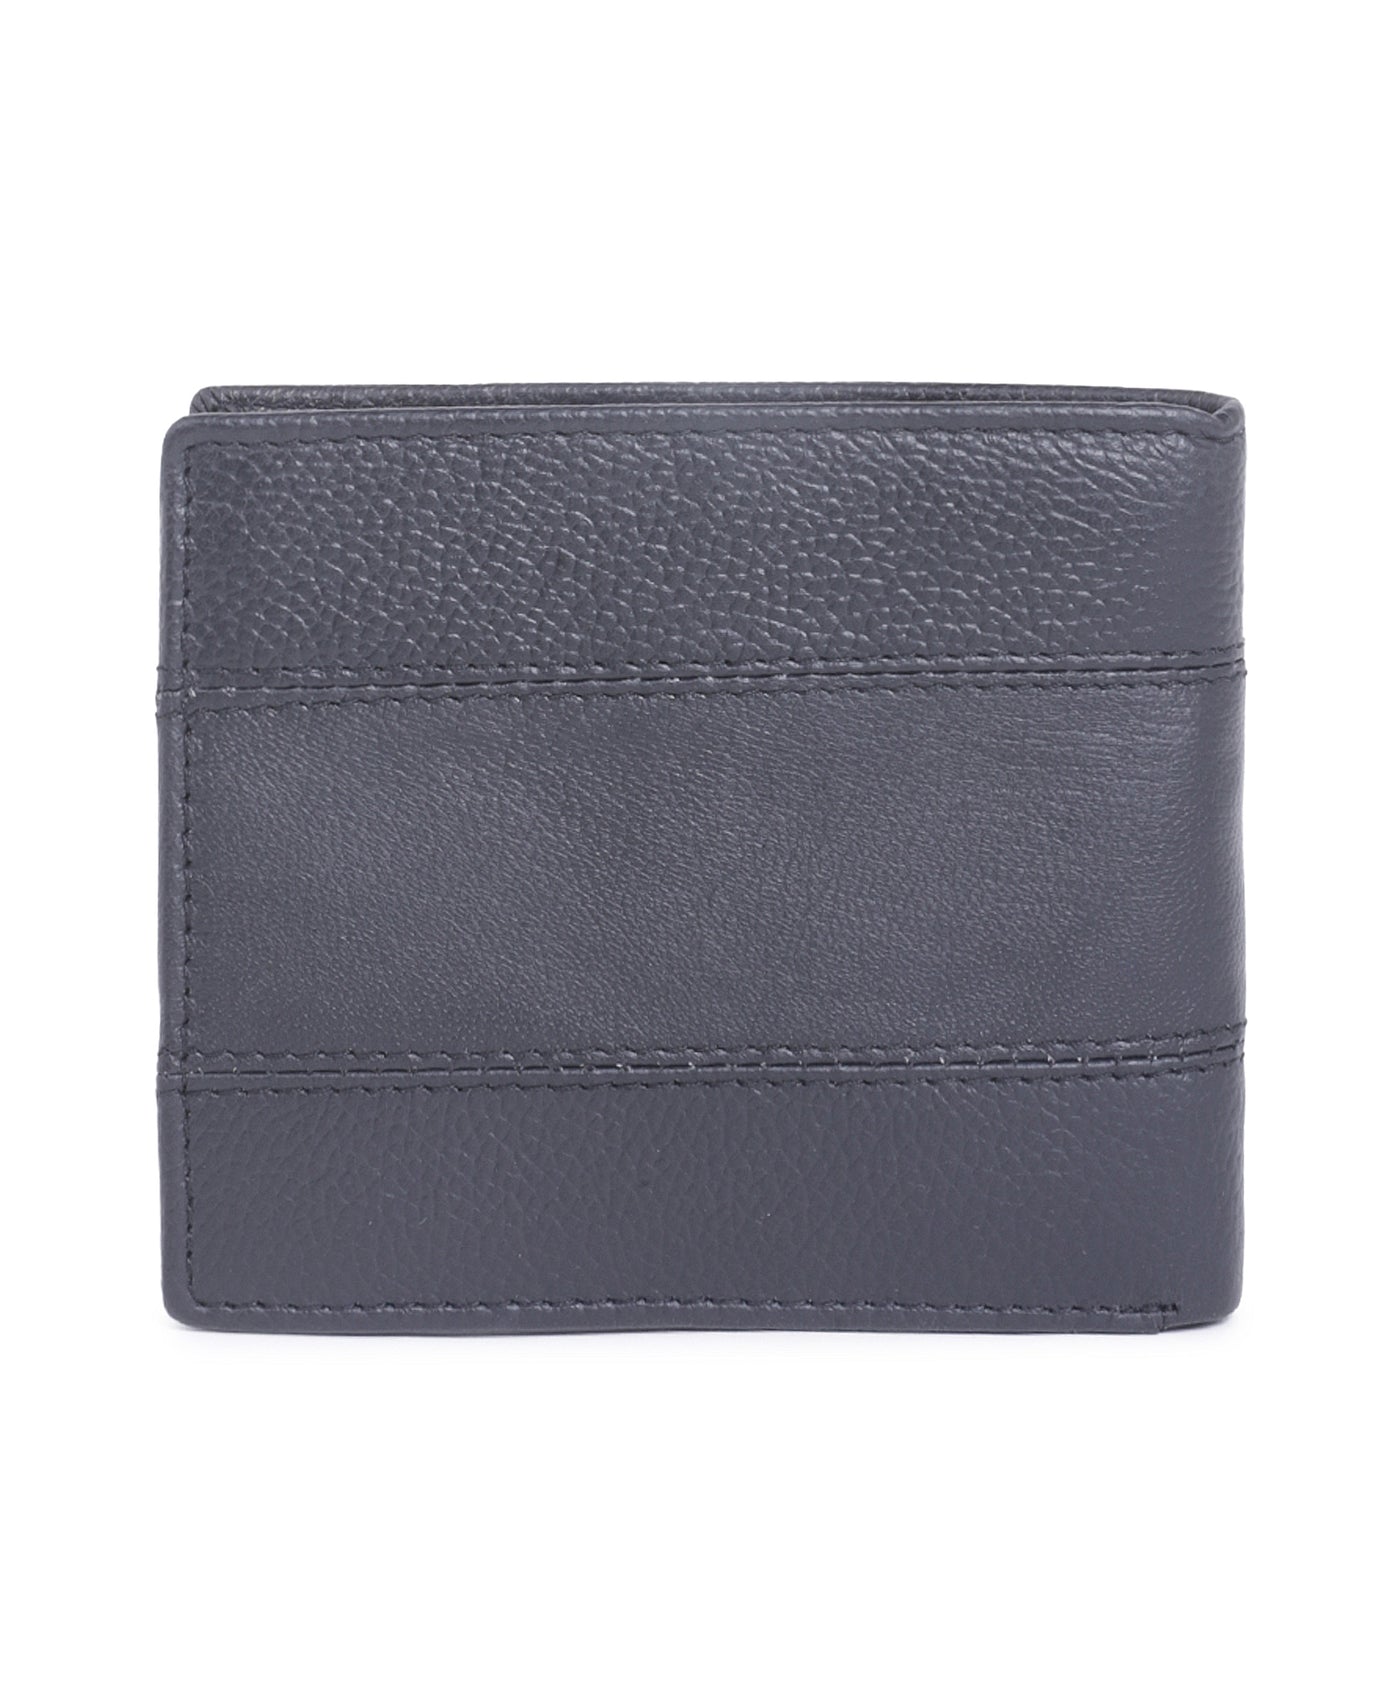 Leather Black Self Design Regular Formal Wallets